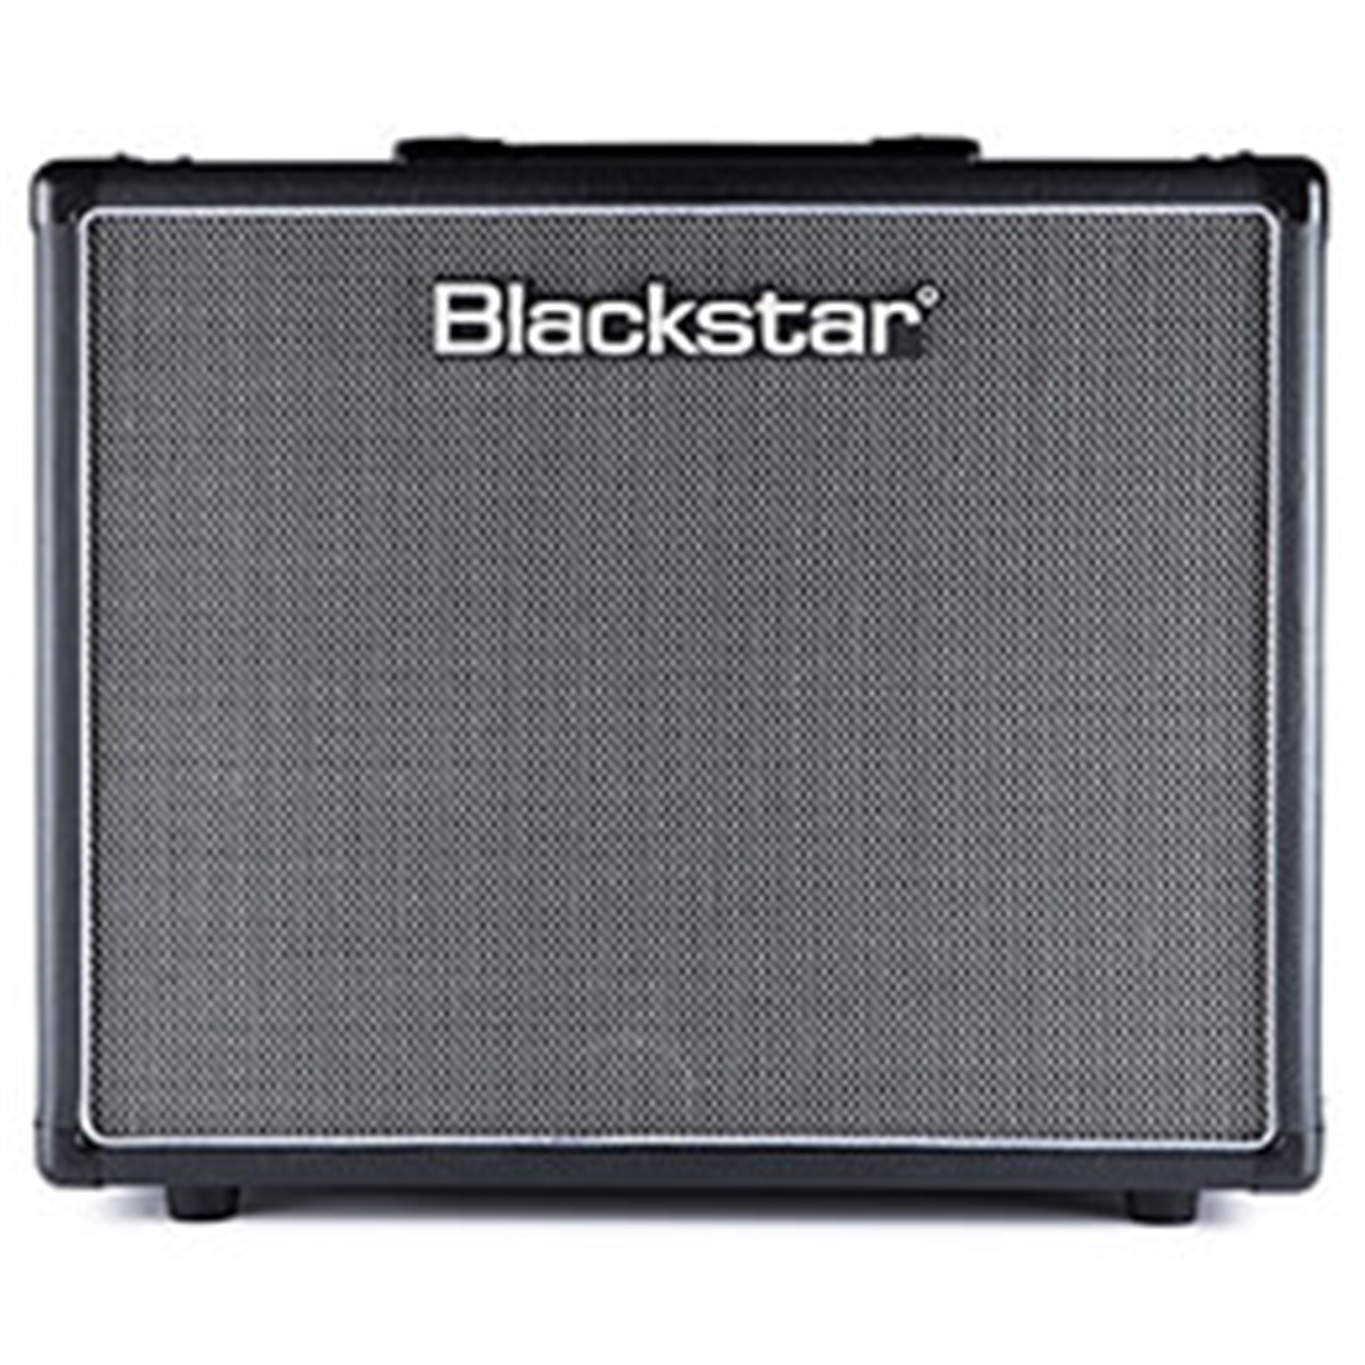 Blackstar HT112OC MK II  1x12" Speaker Cabinet